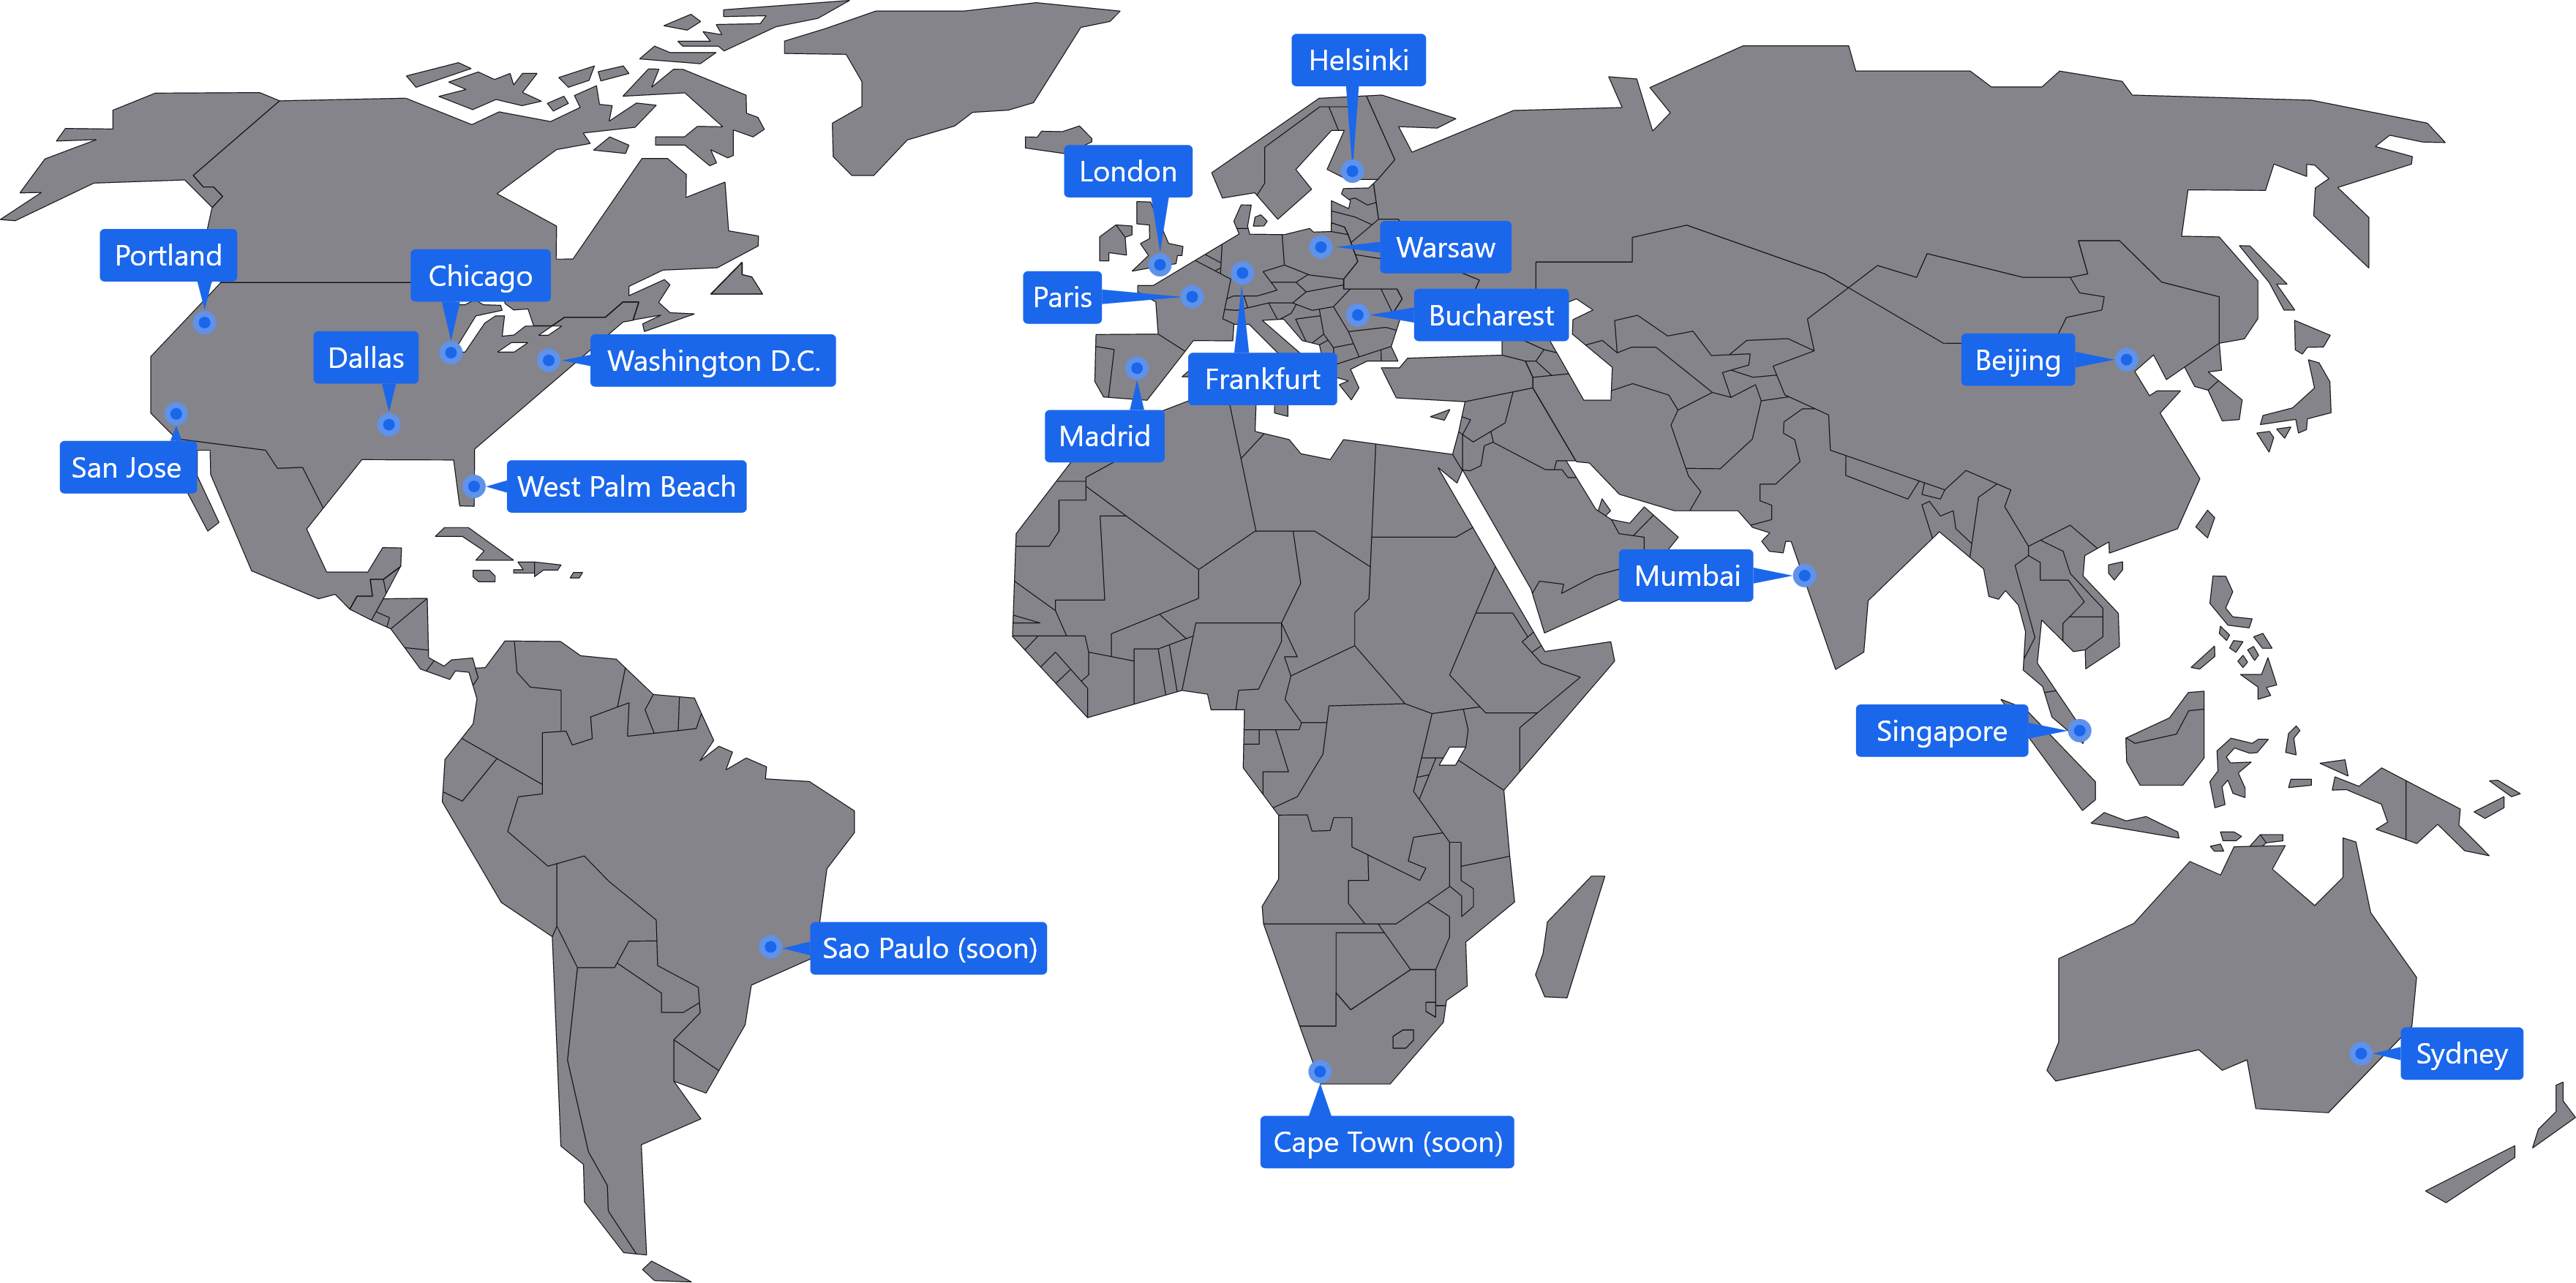 Mappa del mondo con la posizione dei server